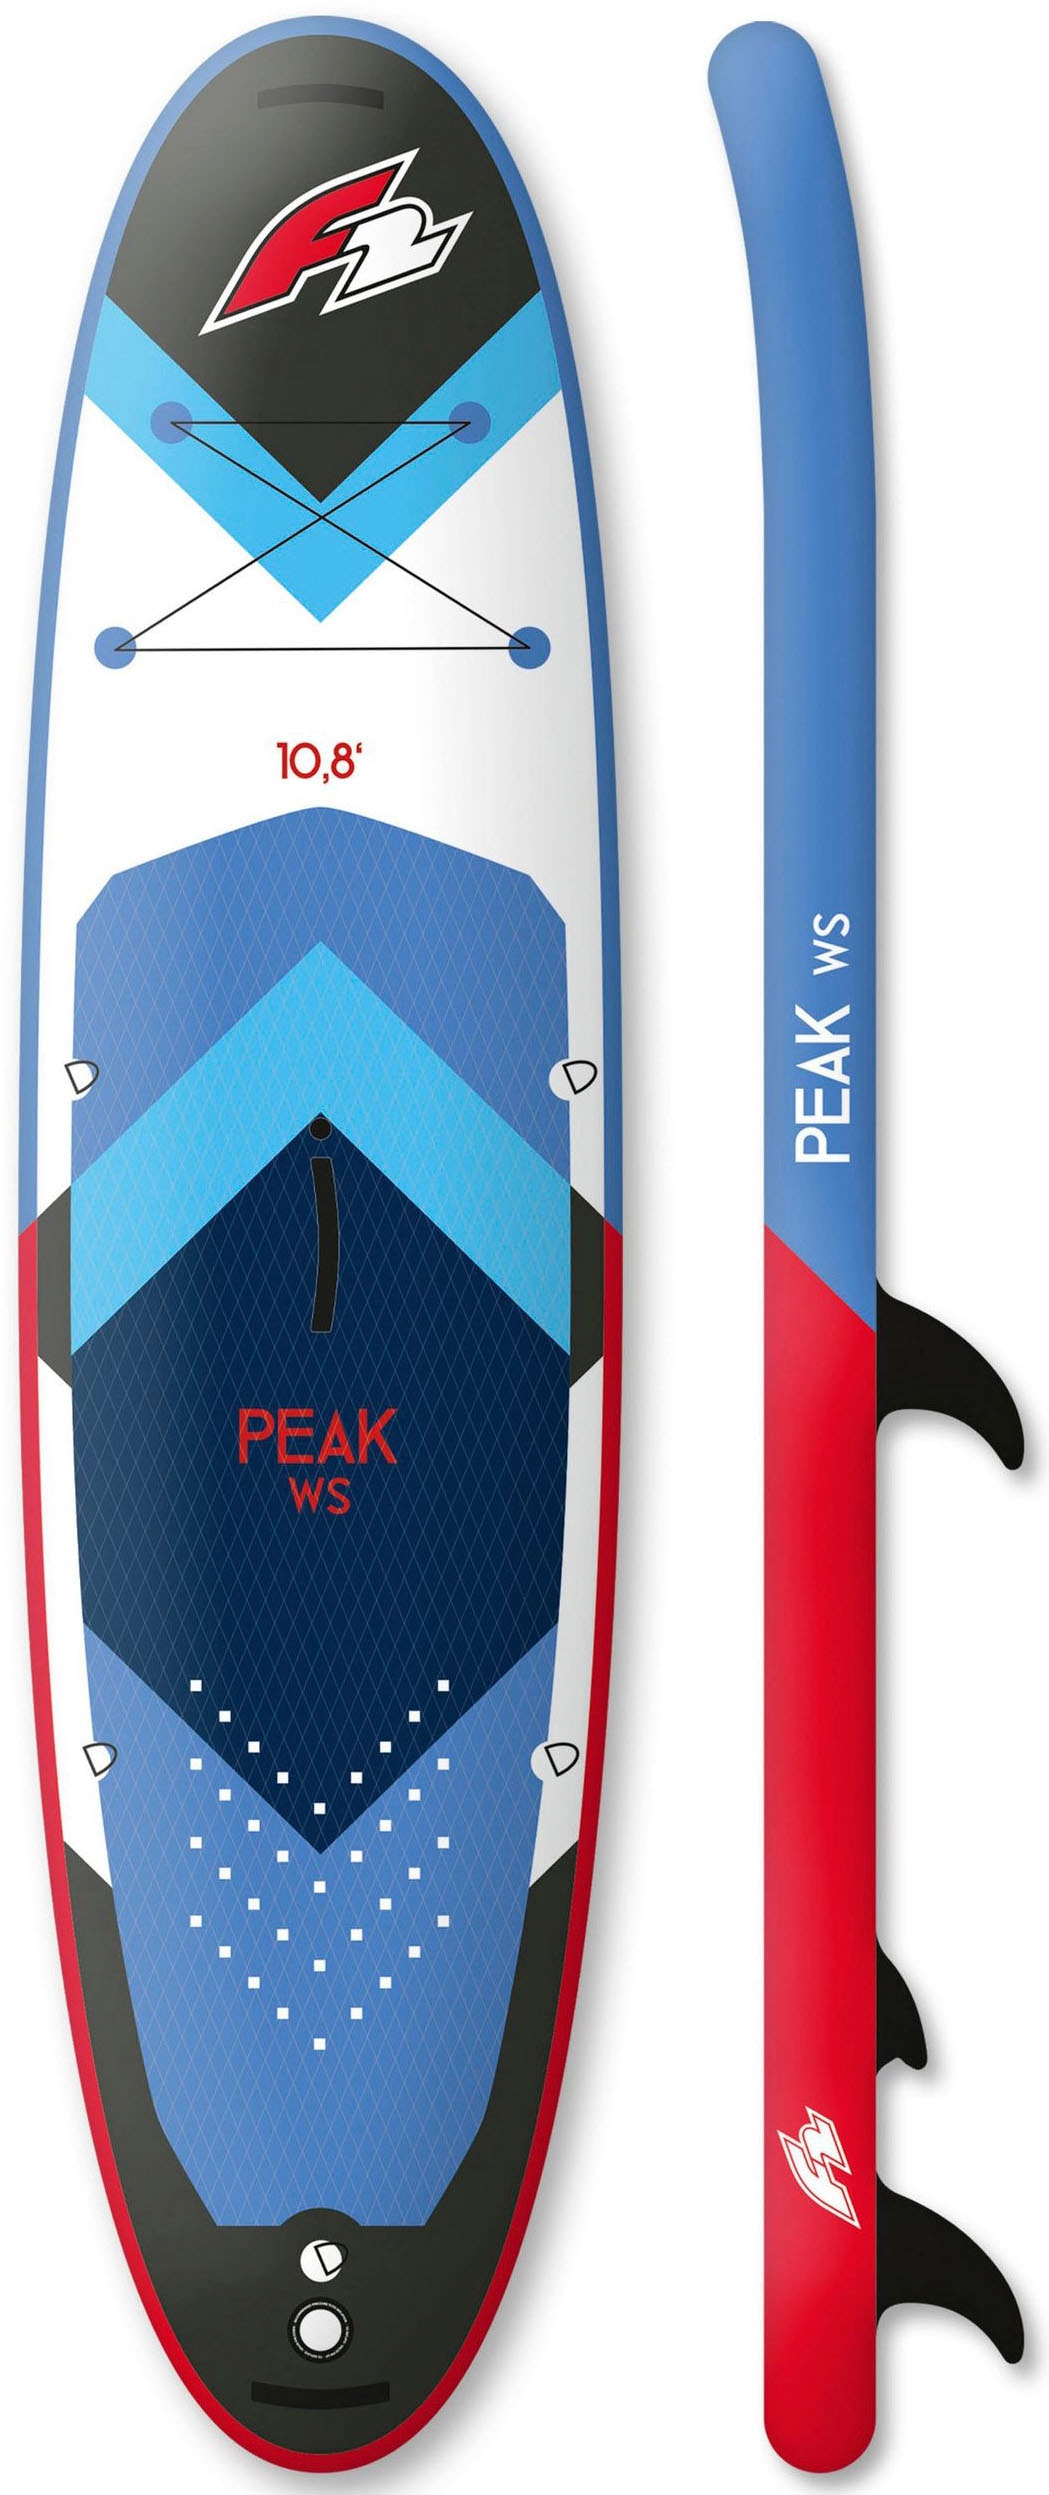 F2 Windsurfboard »Peak WS 10,8 (Set, 16 tlg., mit Rigg Checker bei Segel) Transportrucksack Paddel, 4,5m²«, mit Set und Pumpe